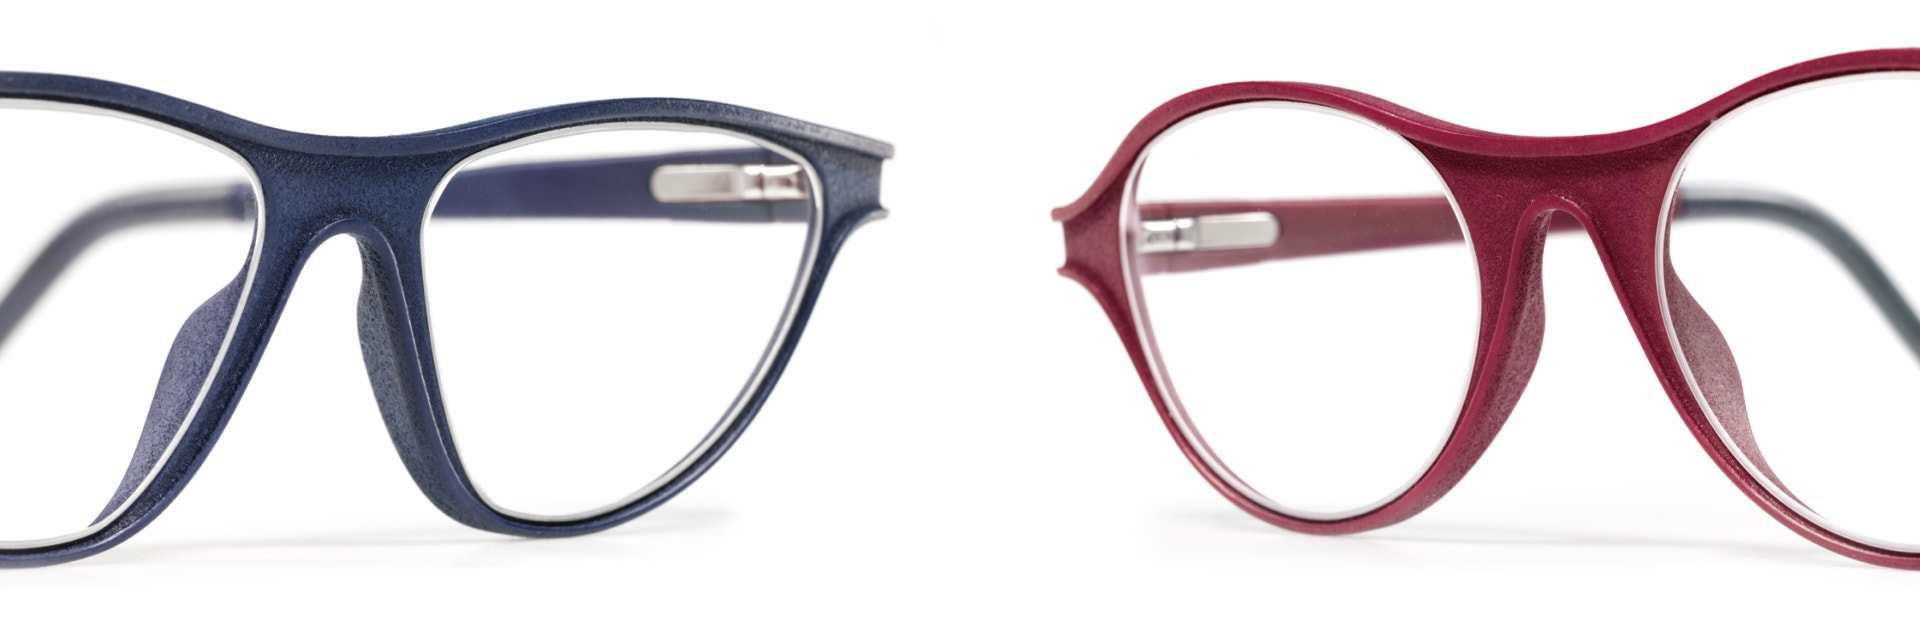 Luxura 마감 처리된 3D 프린팅 안경테 두 쌍, 청바지 블루와 라즈베리 레드